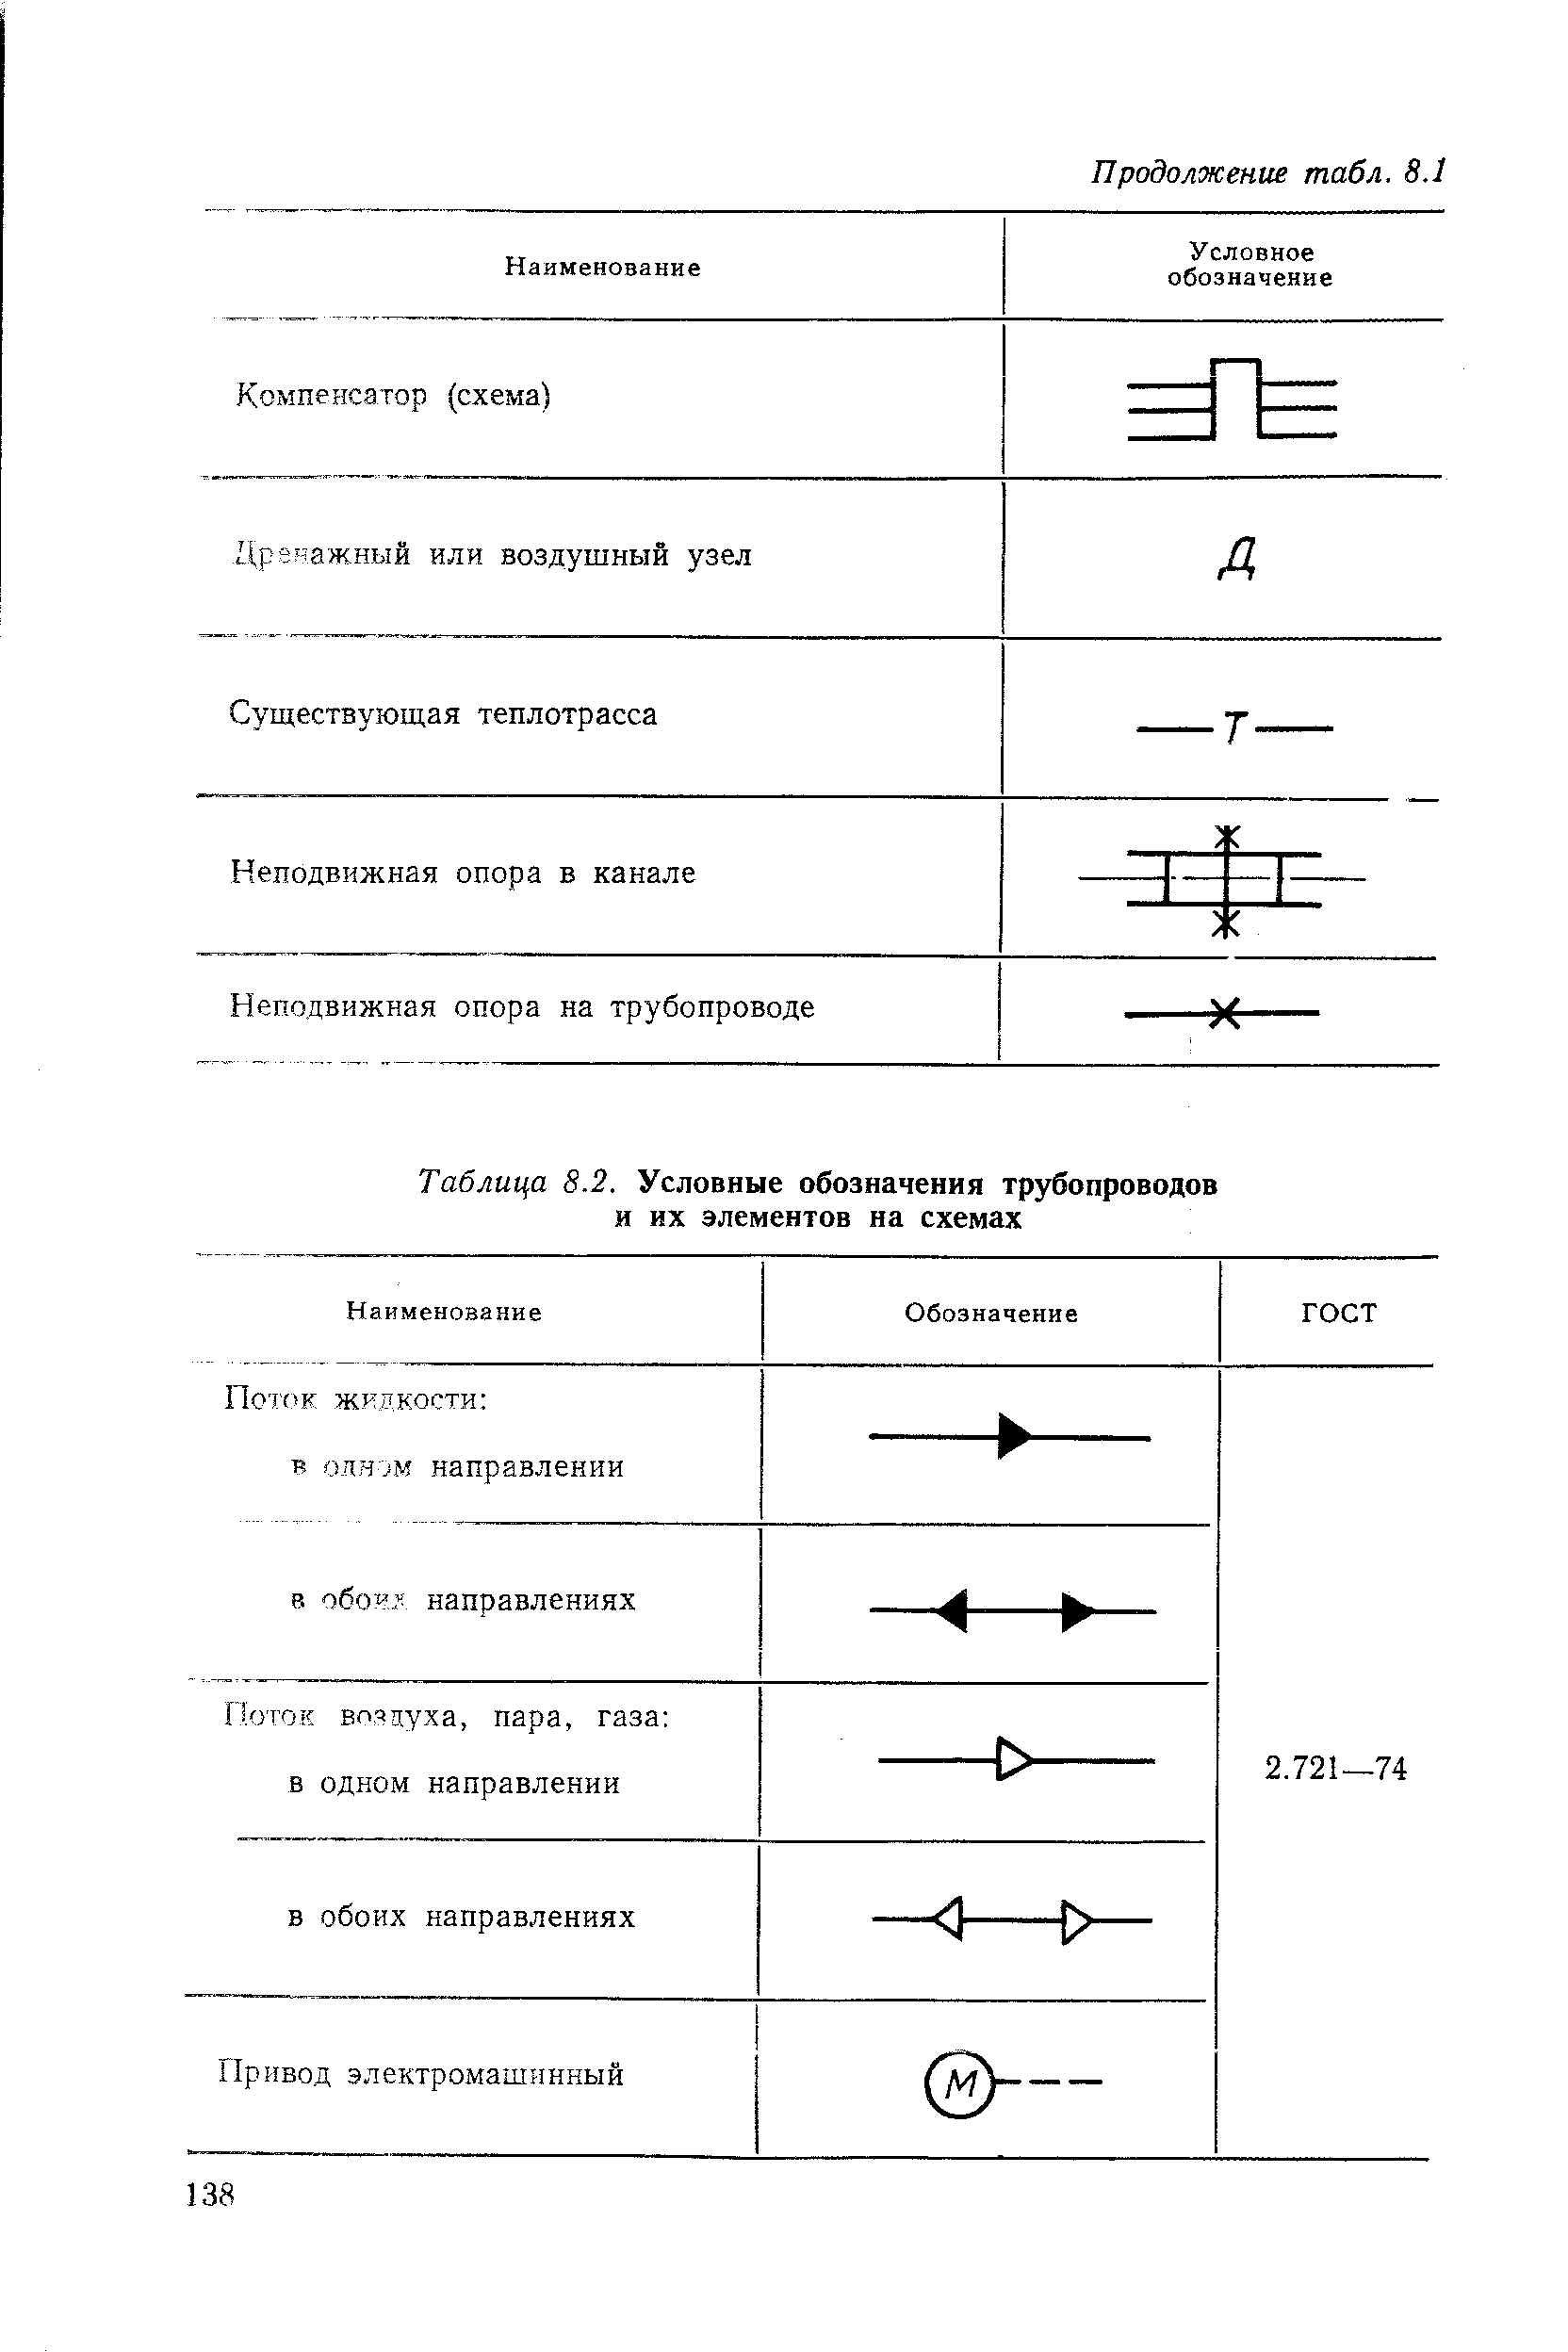 Таблица 8.2. Условные обозначения трубопроводов и их элементов на схемах
